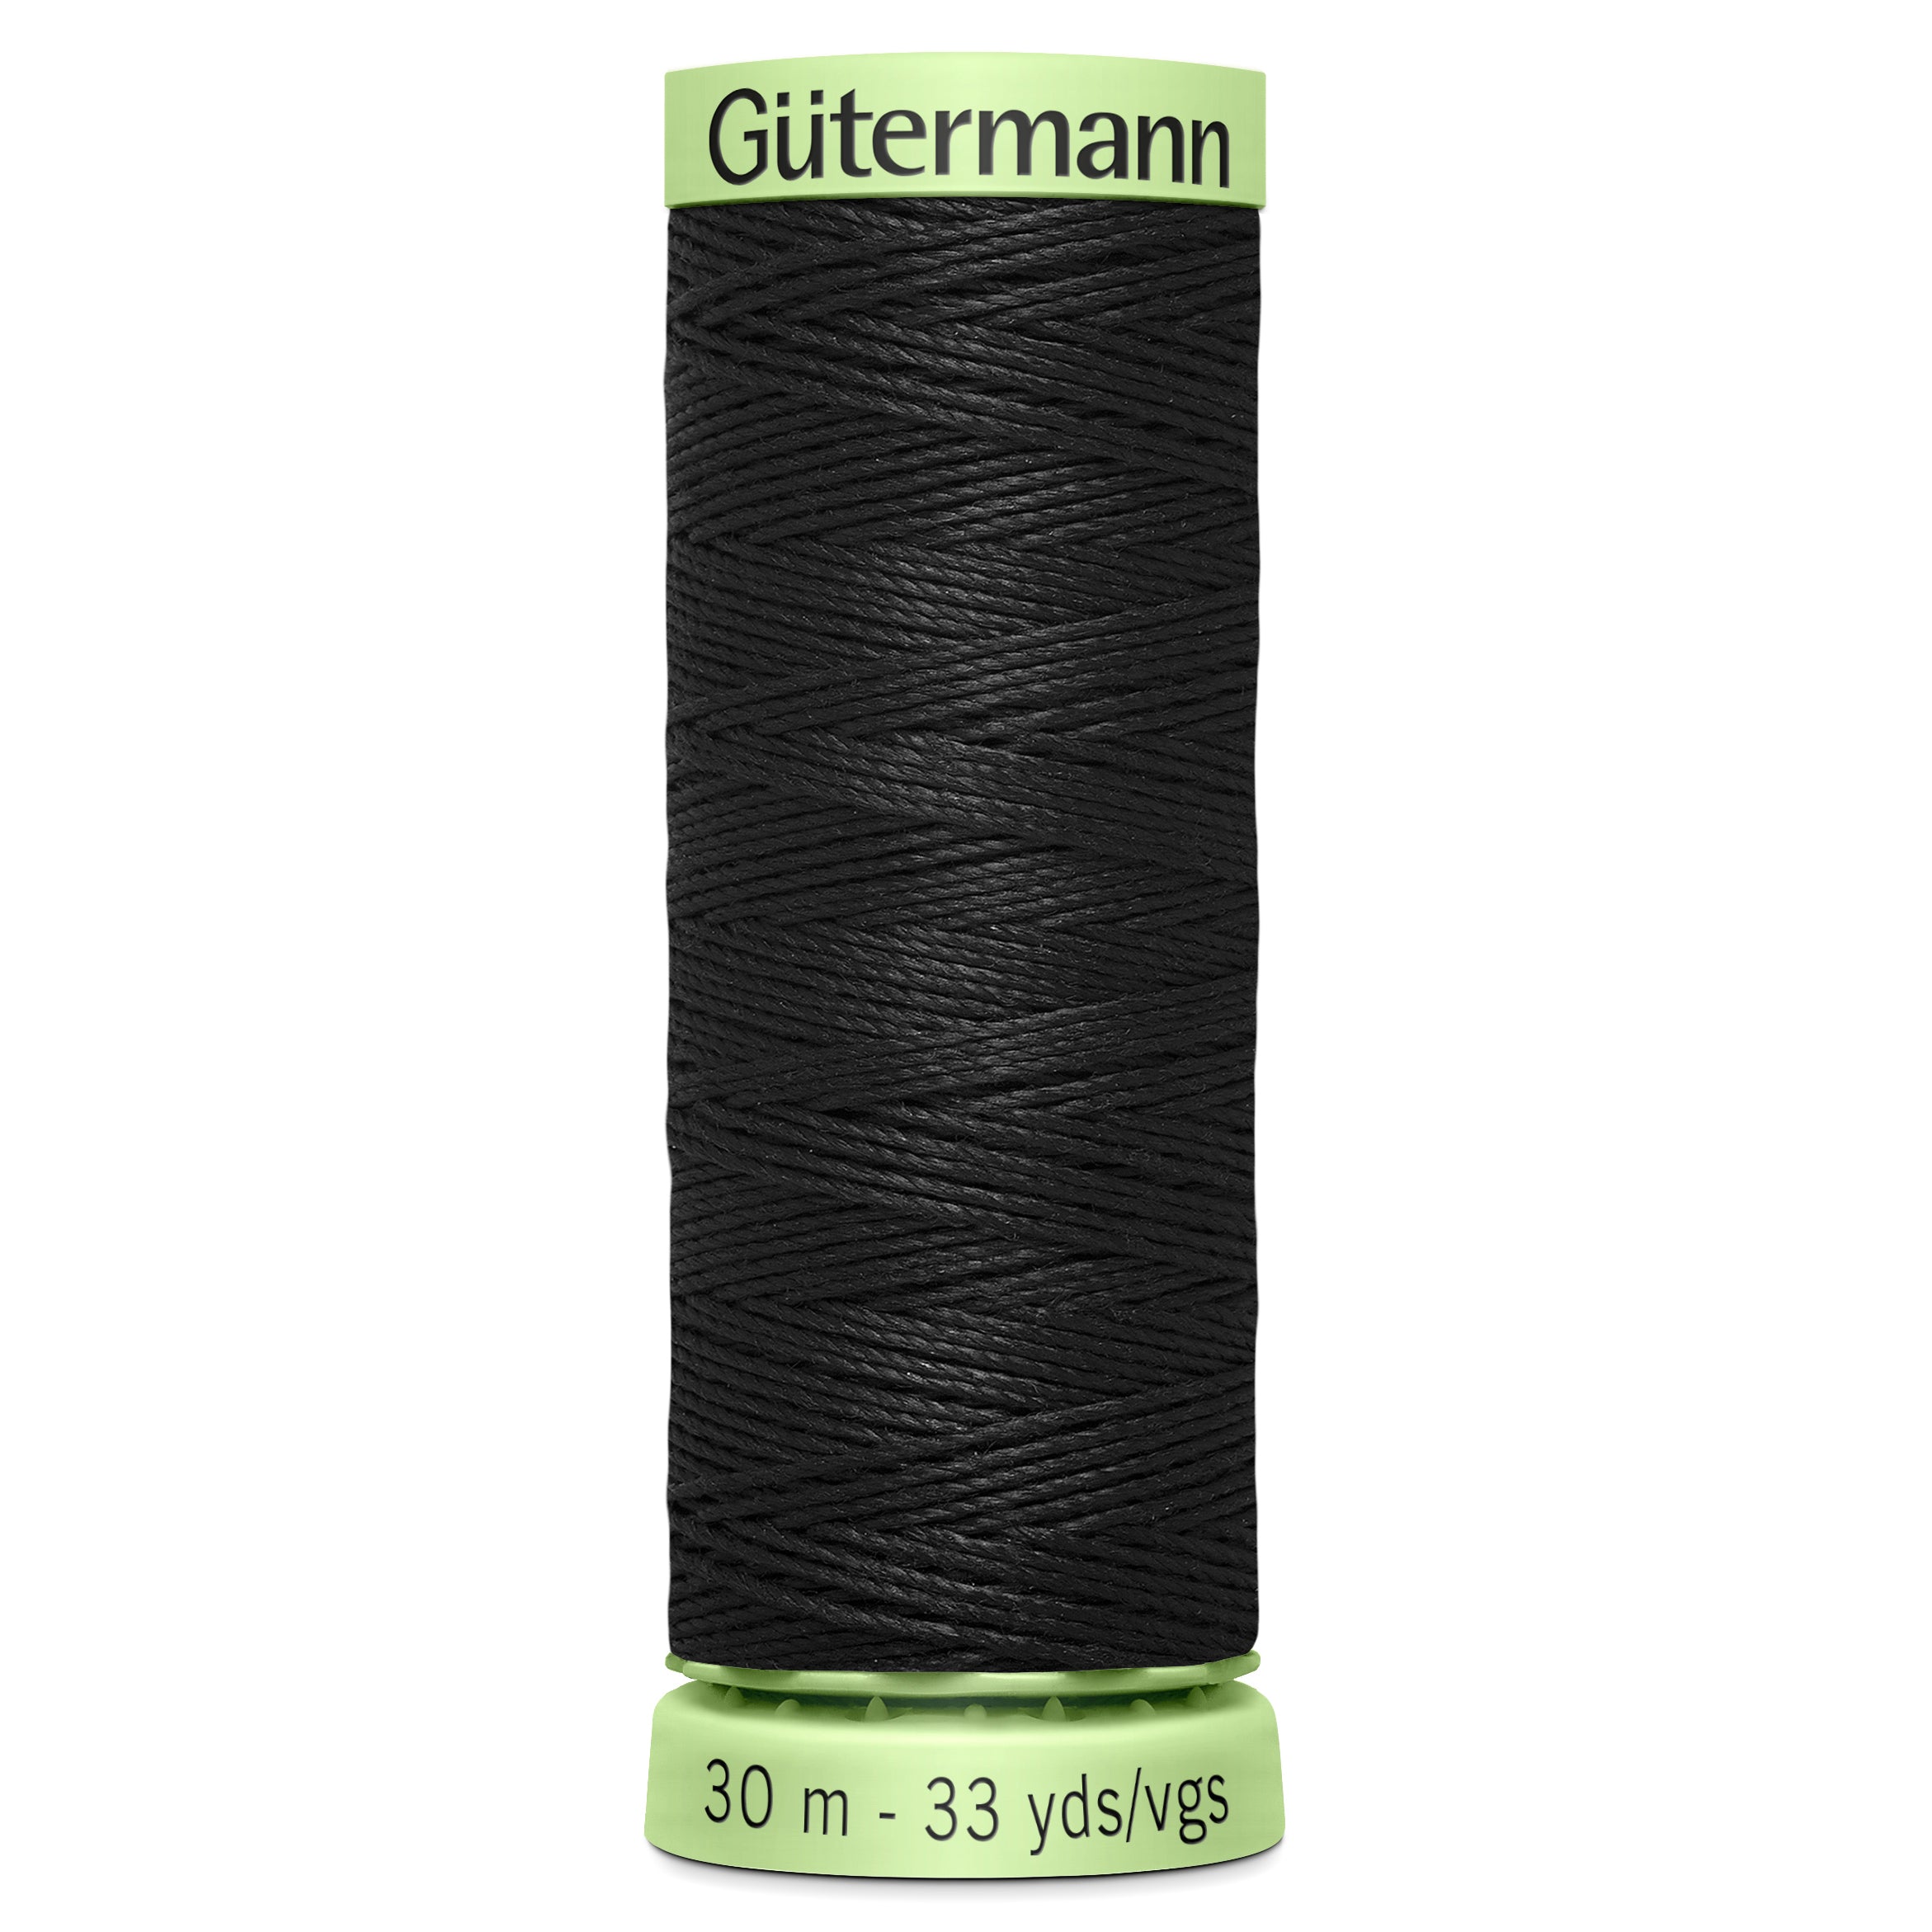 Gutermann Top Stitch Thread, 30m, Black-Thread-Flying Bobbins Haberdashery